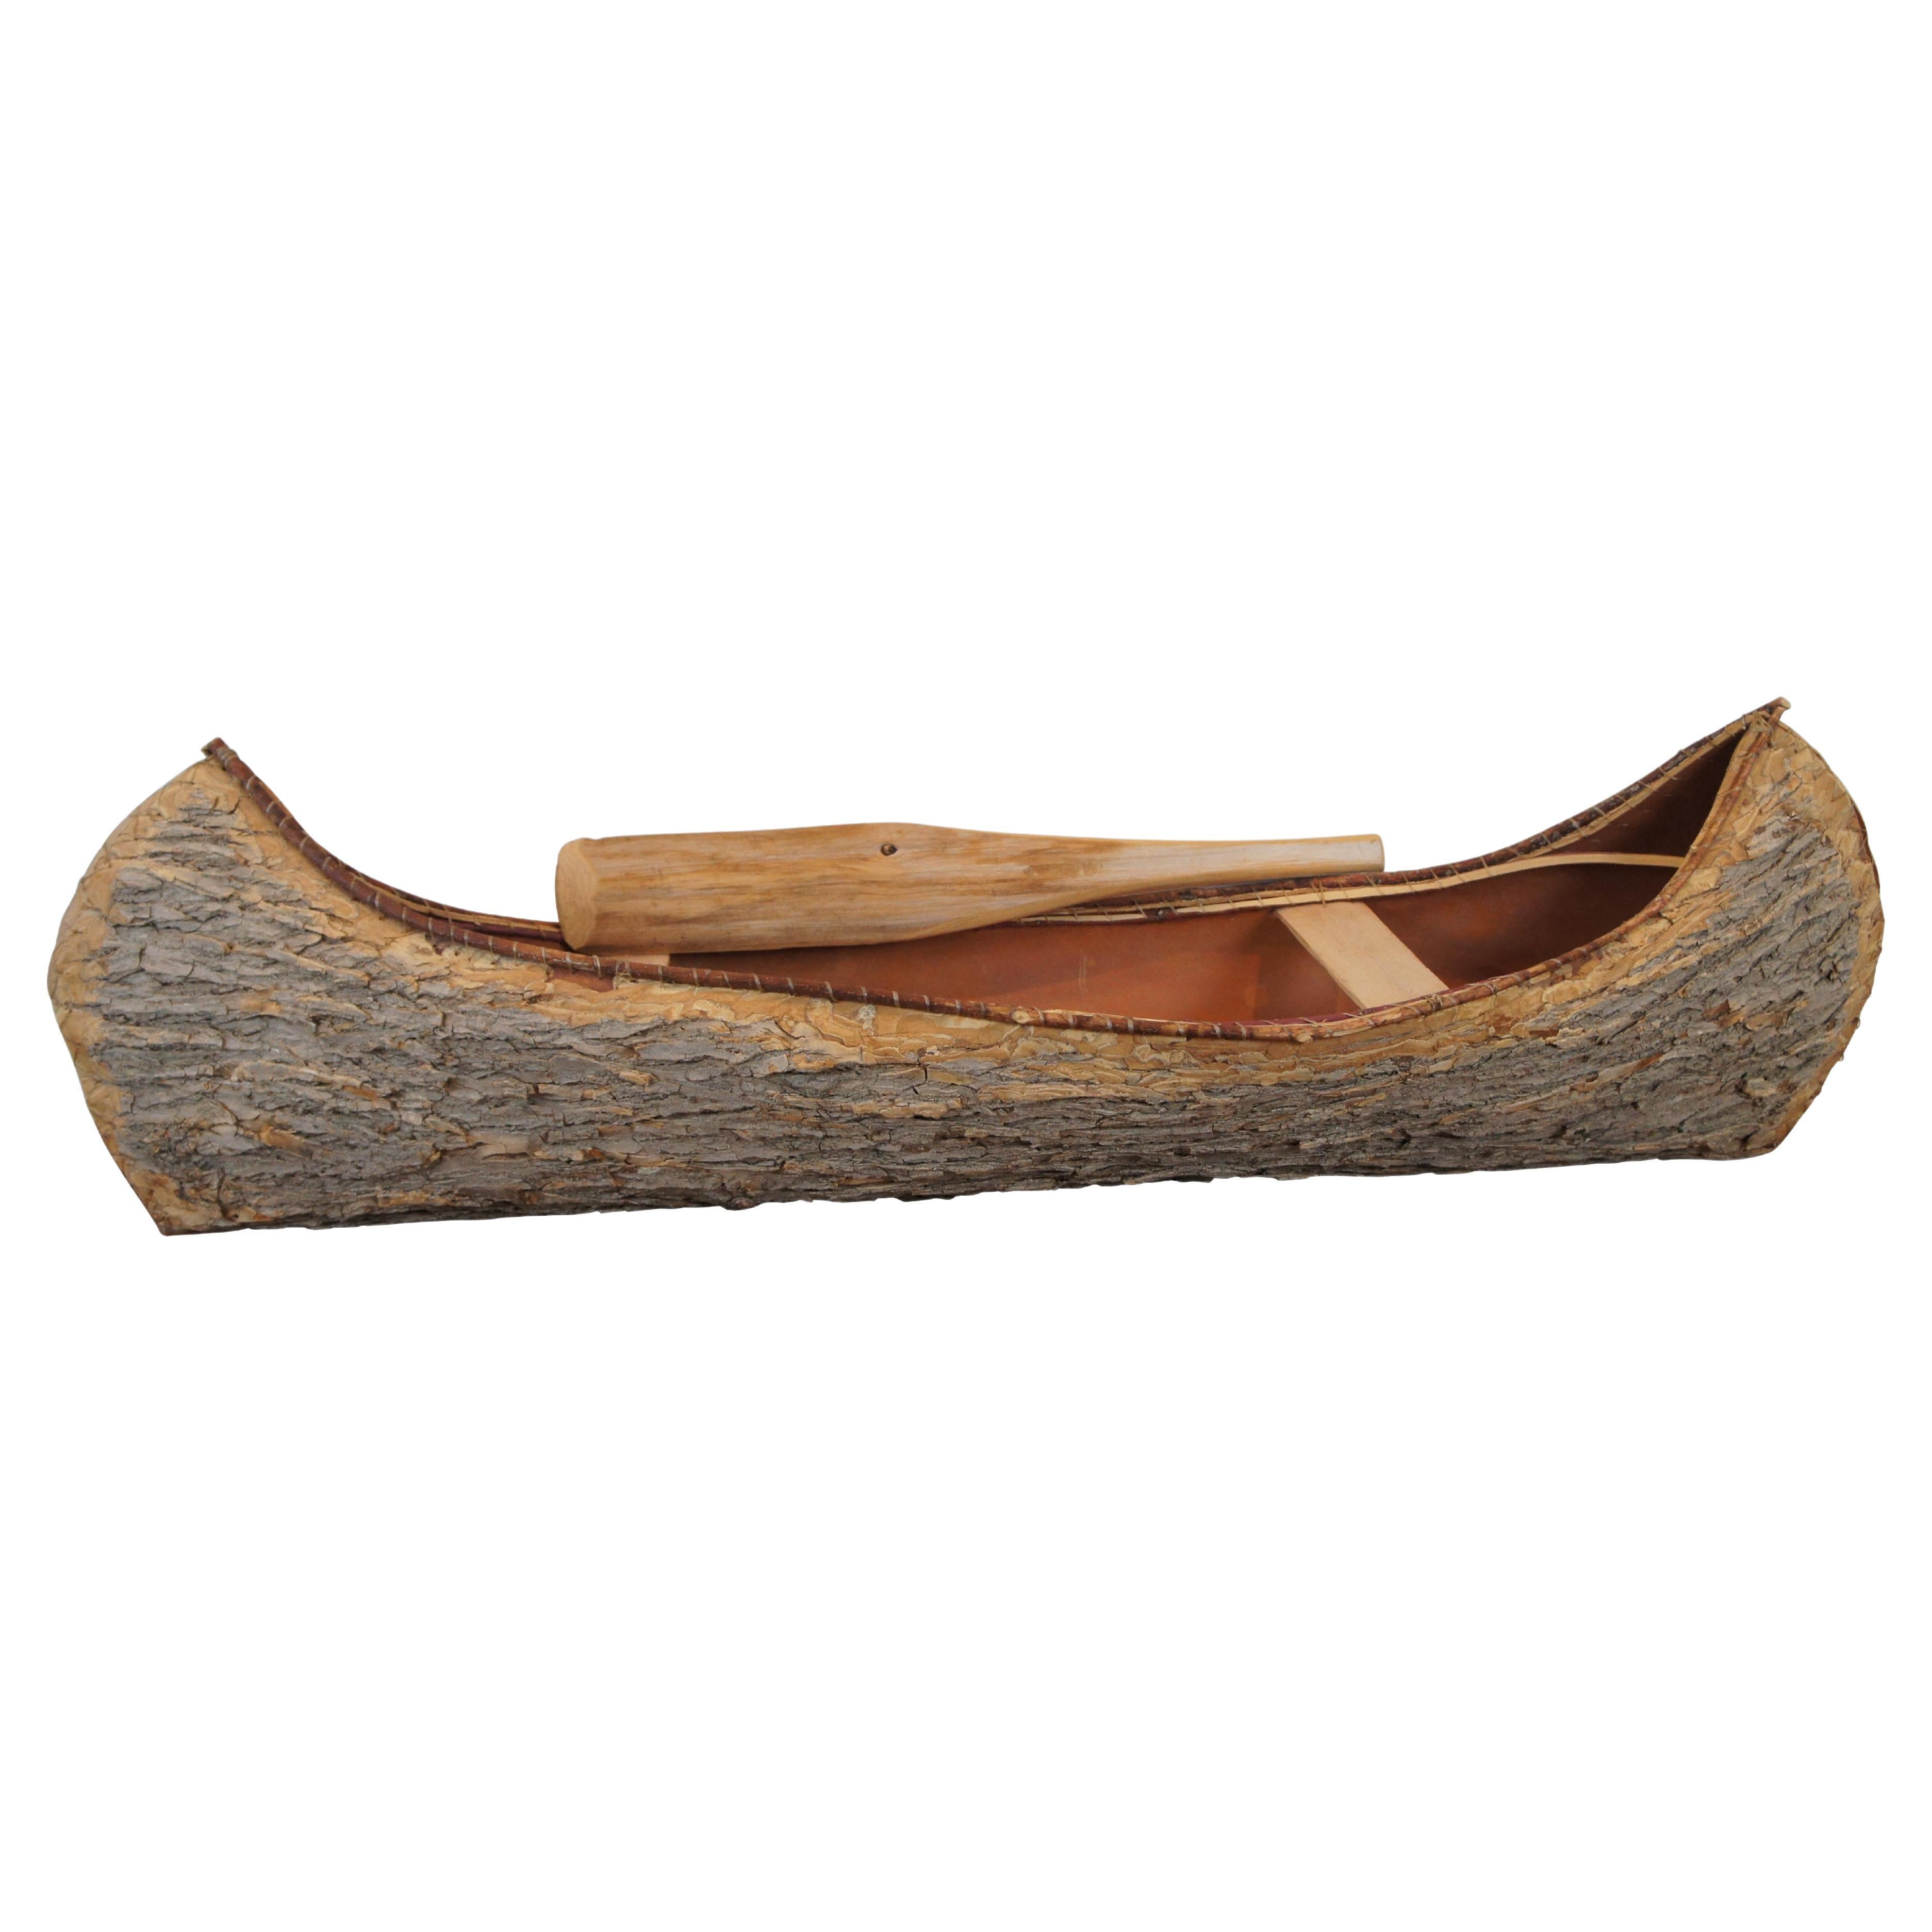 Primitive Rustic Folk Art Birch Bark Model 1/3 Scale Canoe & Paddle 47" (Modèle réduit de canoë et de pagaie en écorce de bouleau) 